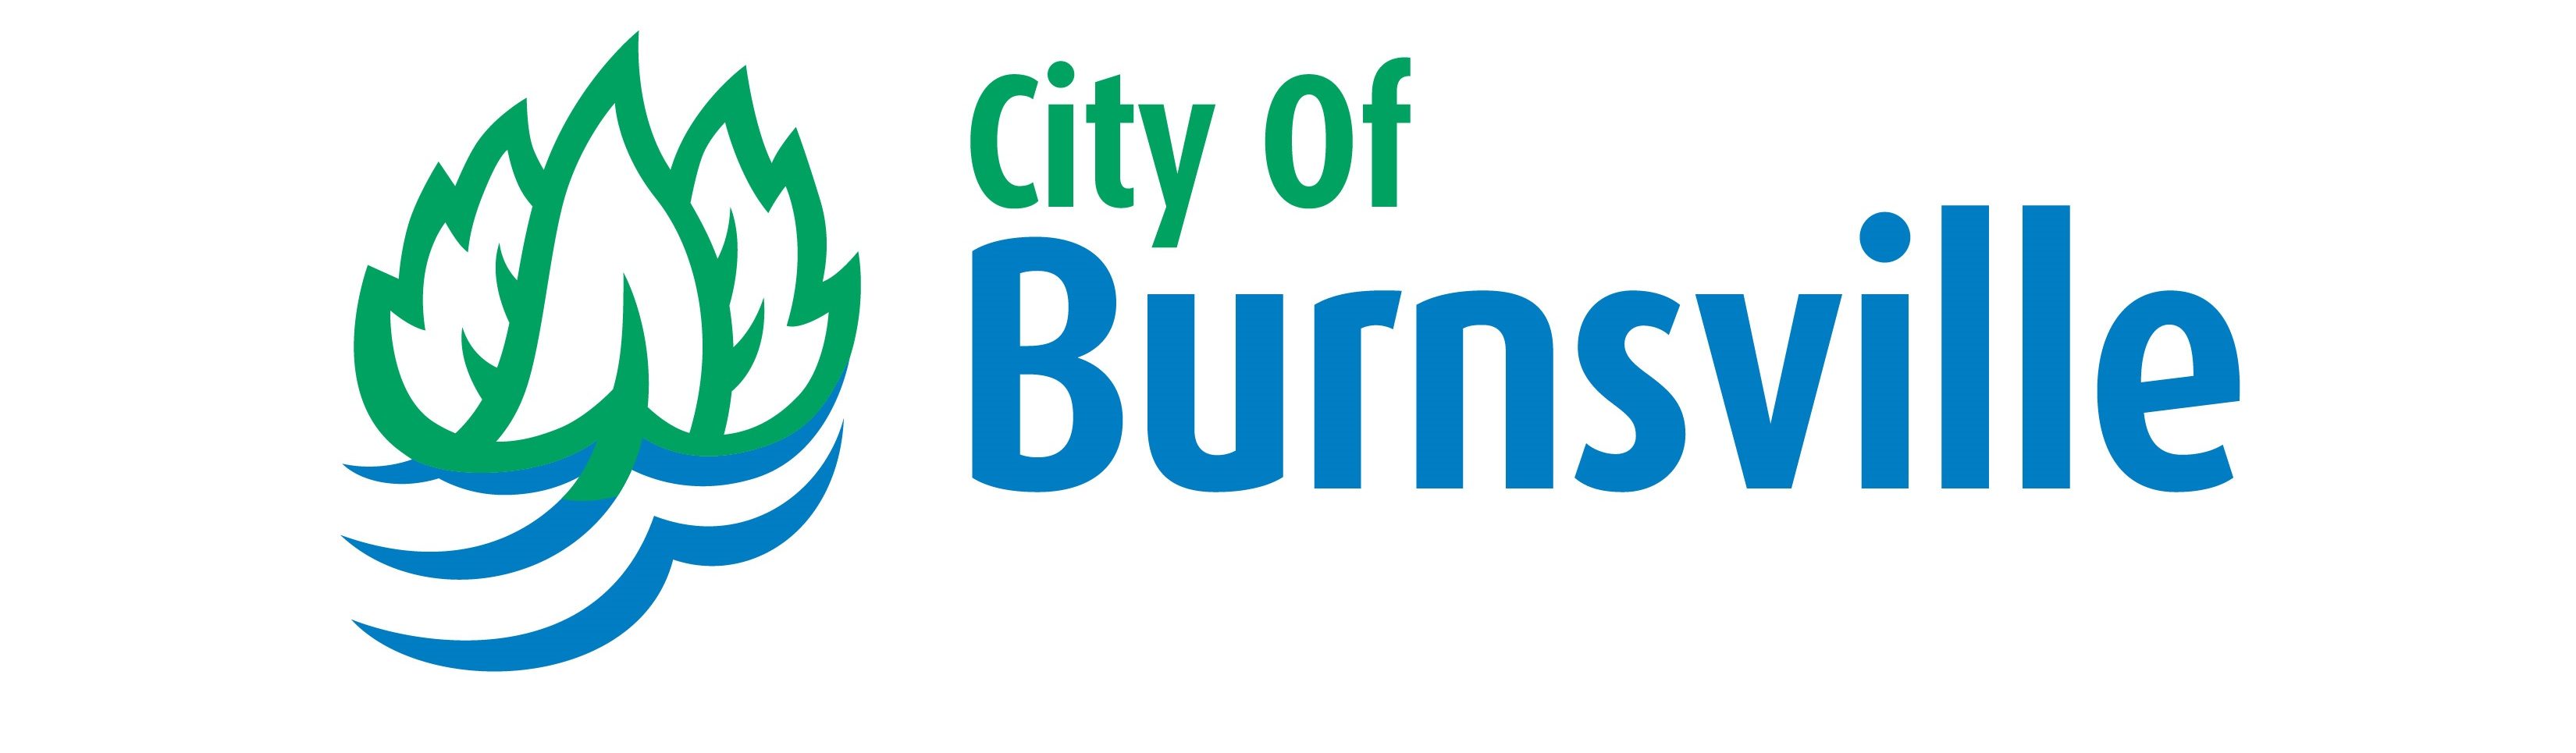 City of burnsville mn job openings